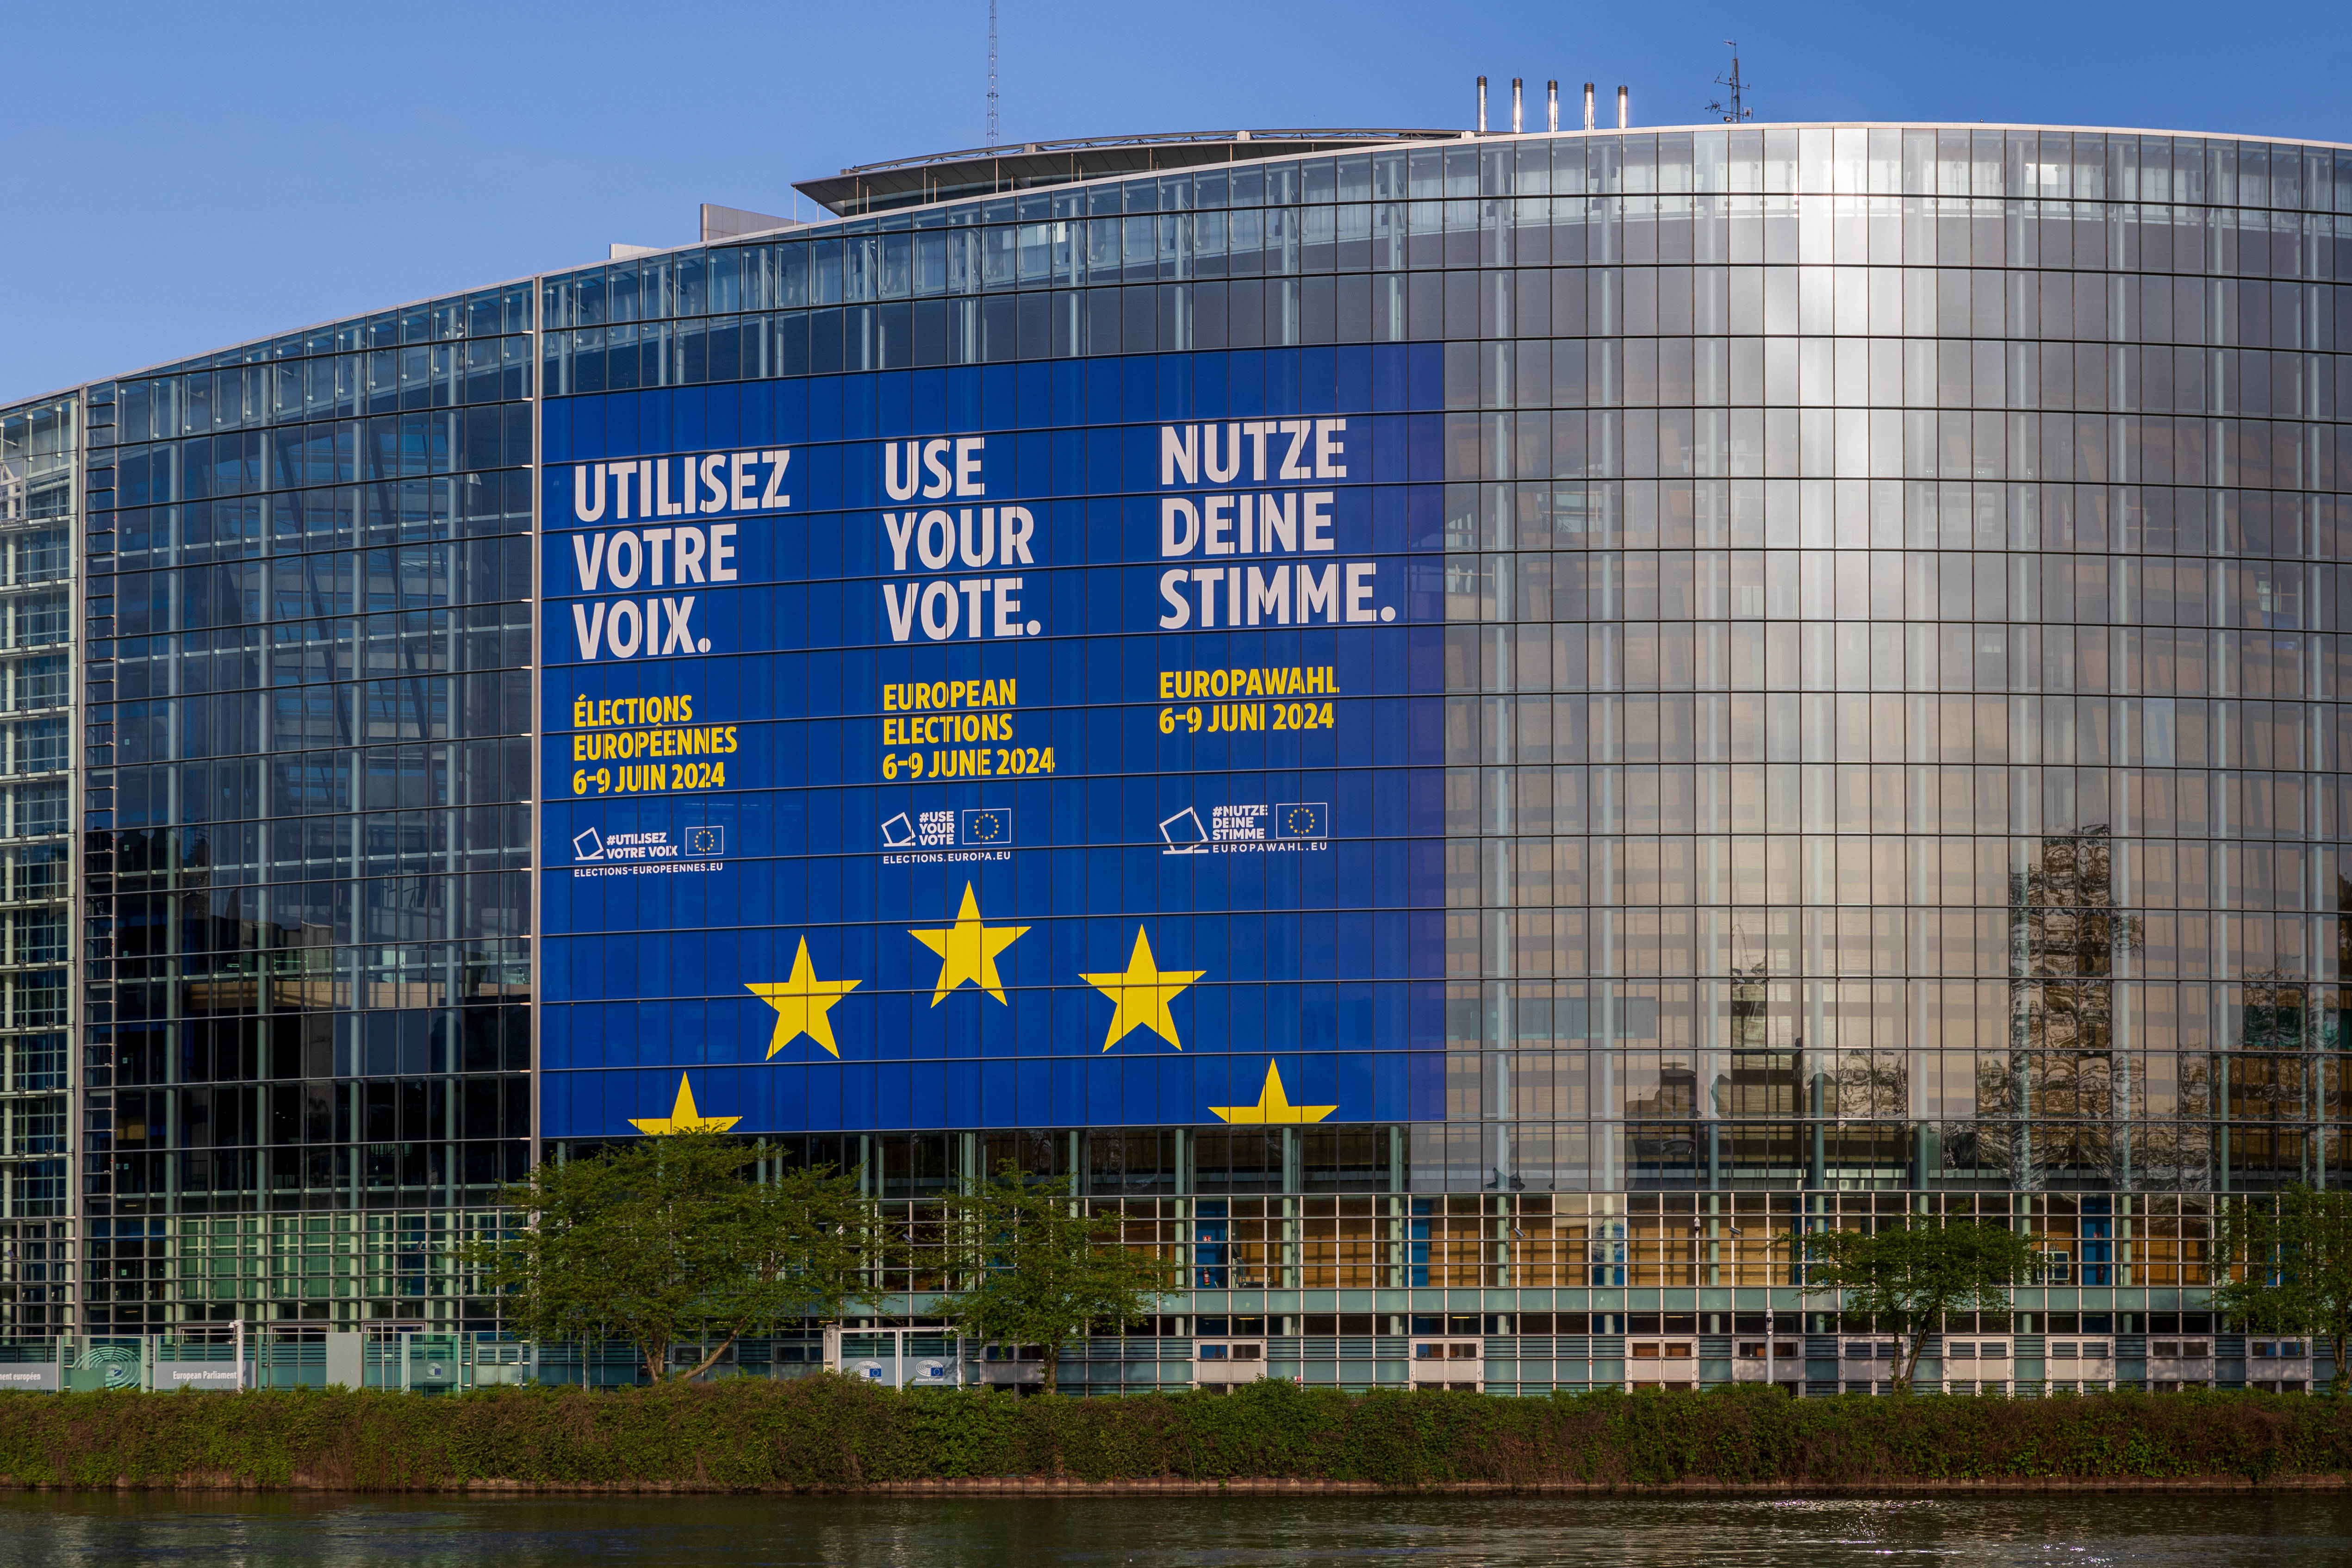 Das EU-Parlament in Straßburg, der zweite Sitz des Parlamentes neben Brüssel: Für die Europawahl 2024 wurde ein überdimensionales mehrsprachiges Plakat angeberacht, mit dem Aufruf zur Stimmabgabe.